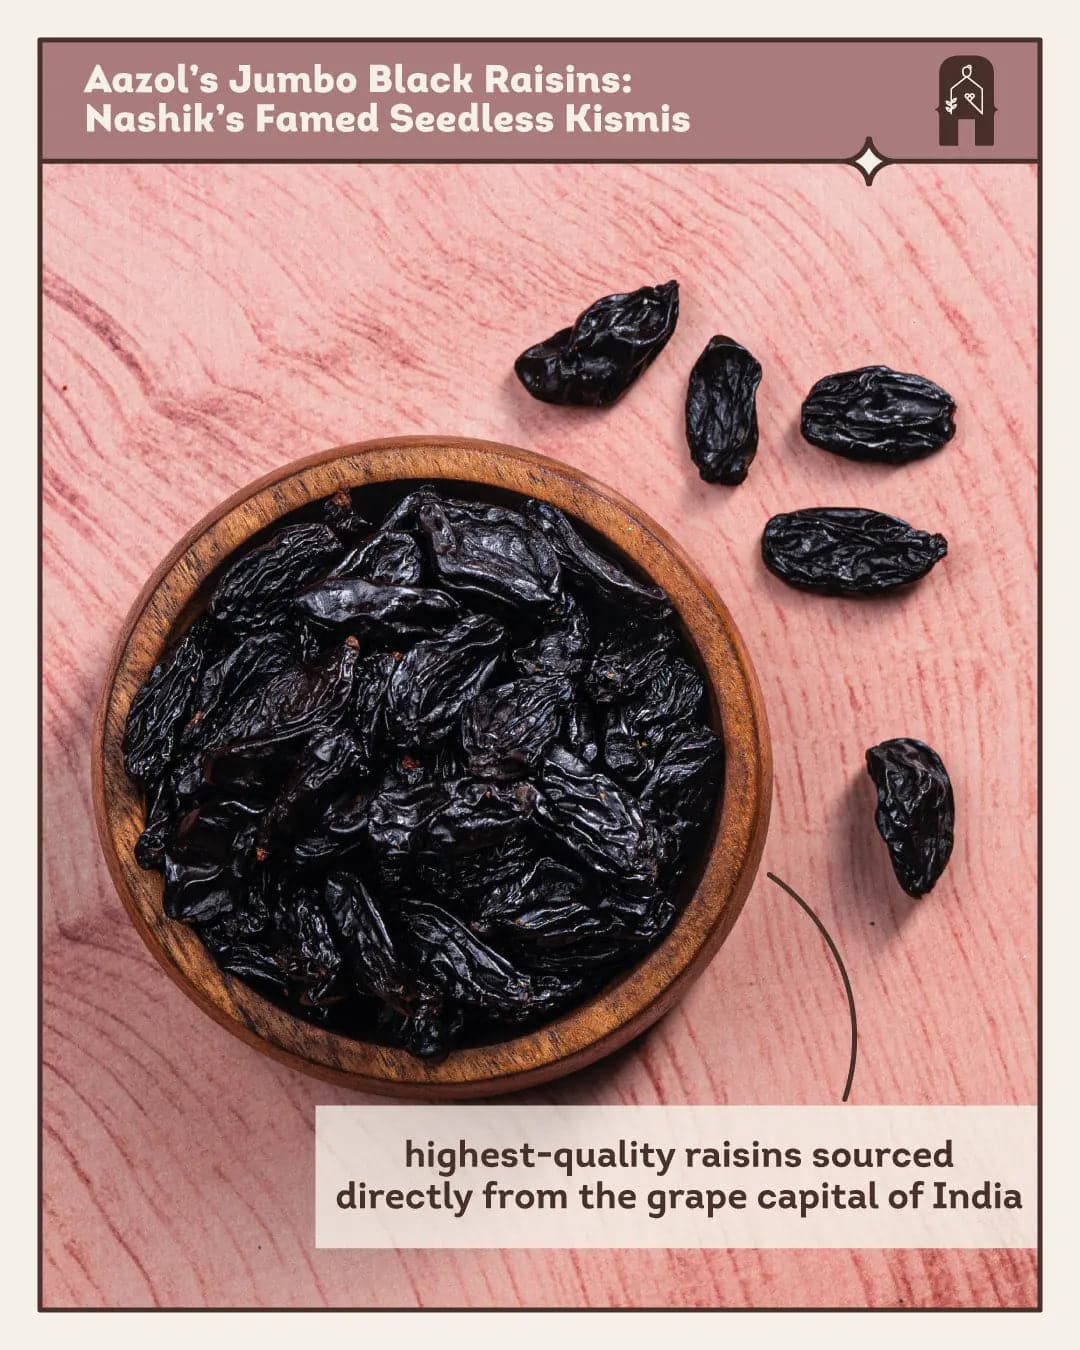 Jumbo Black Raisins: Nashik's Famed Seedless Kismis - 250g Aazol